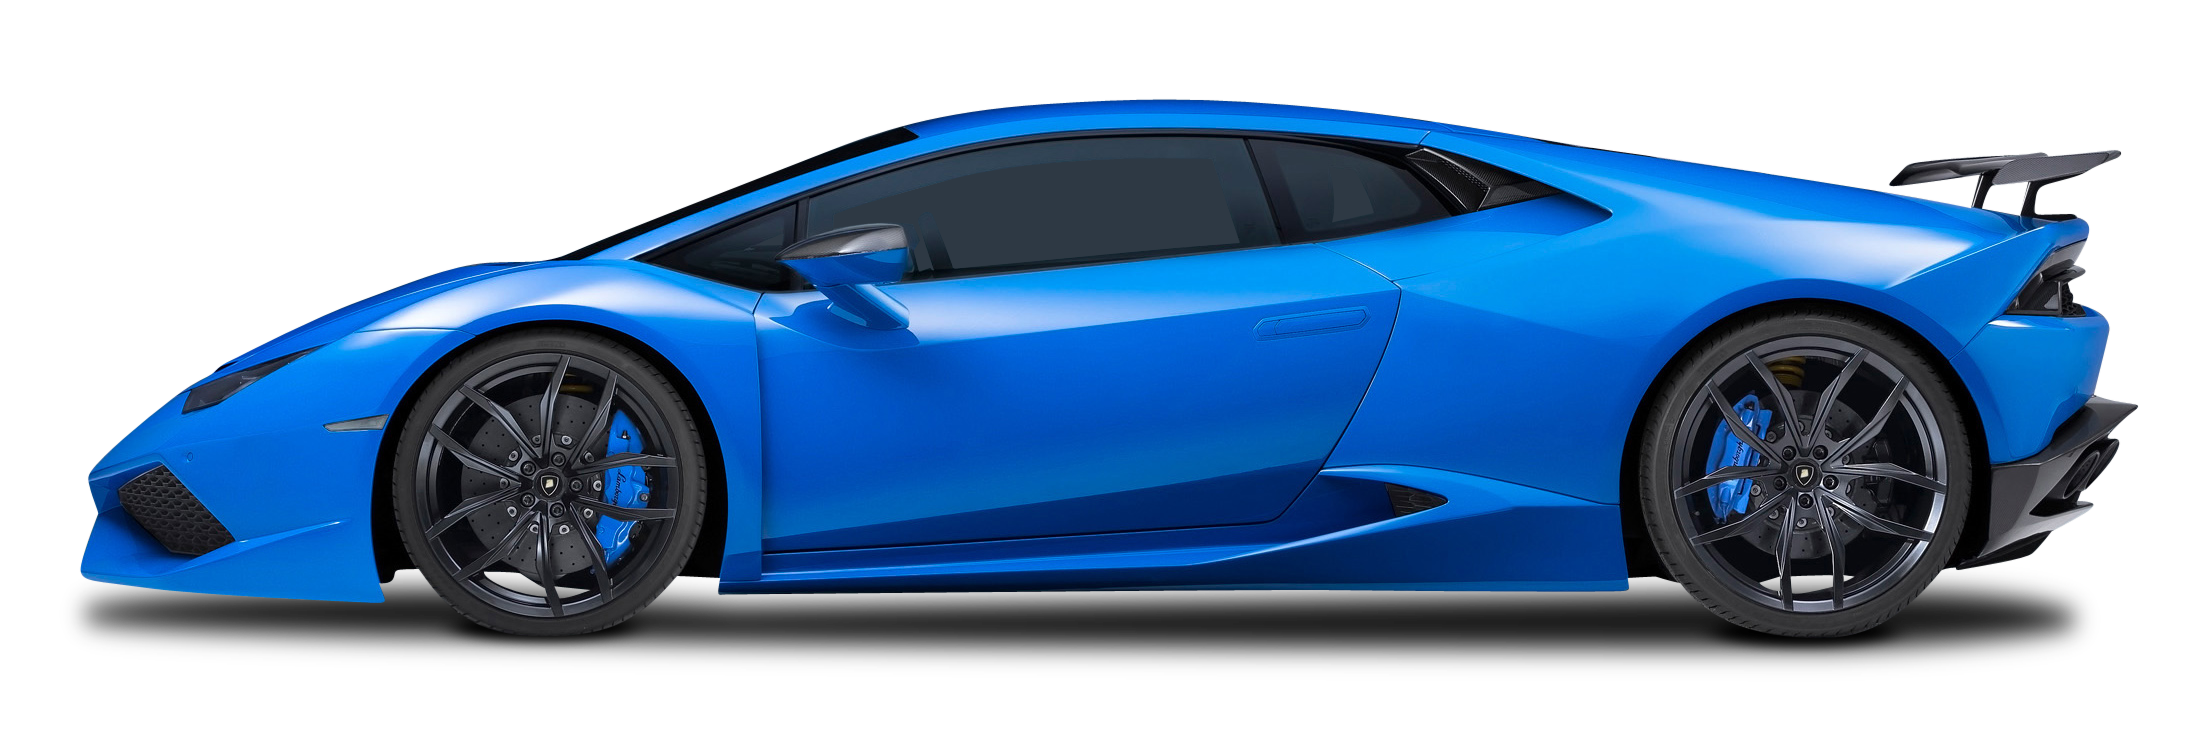 Blue Lamborghini Huracan Car